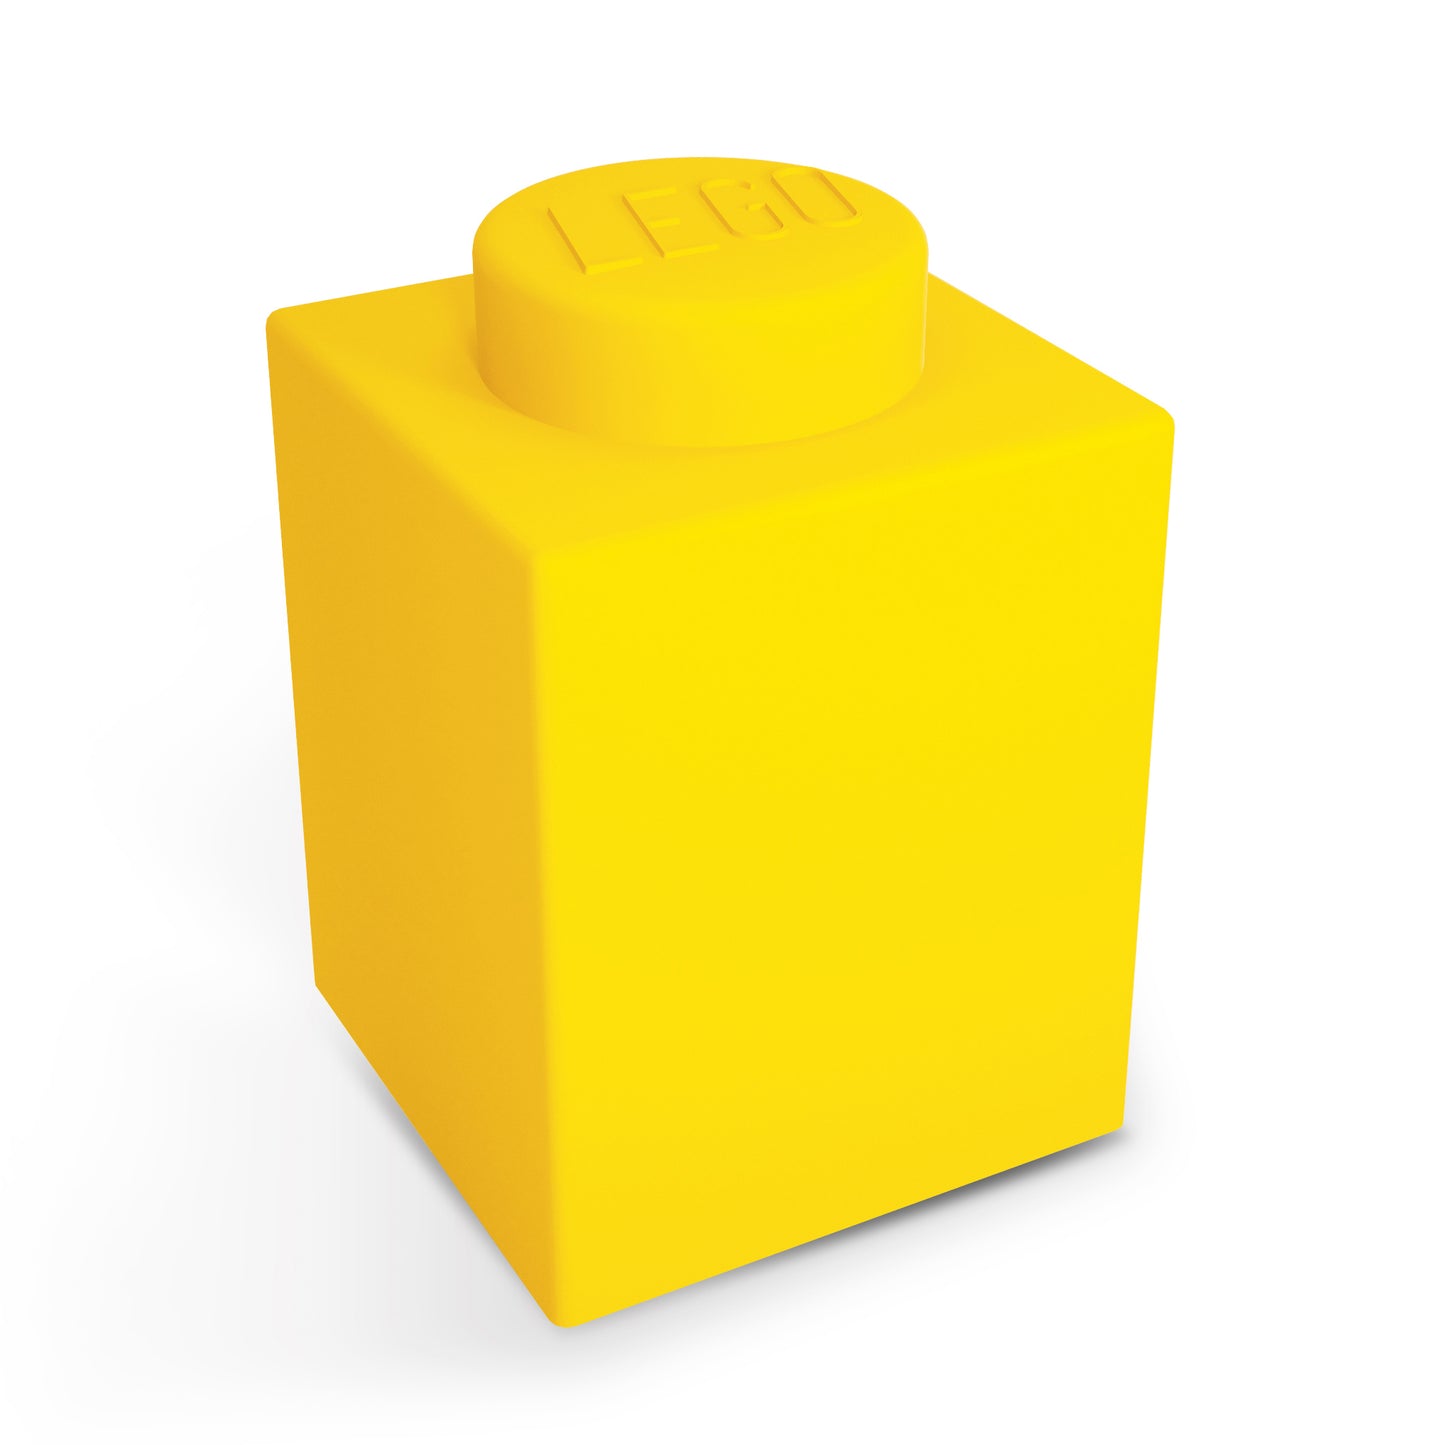 IQ 樂高 積木造型軟矽膠觸控變色燈 黃色 (LP42)